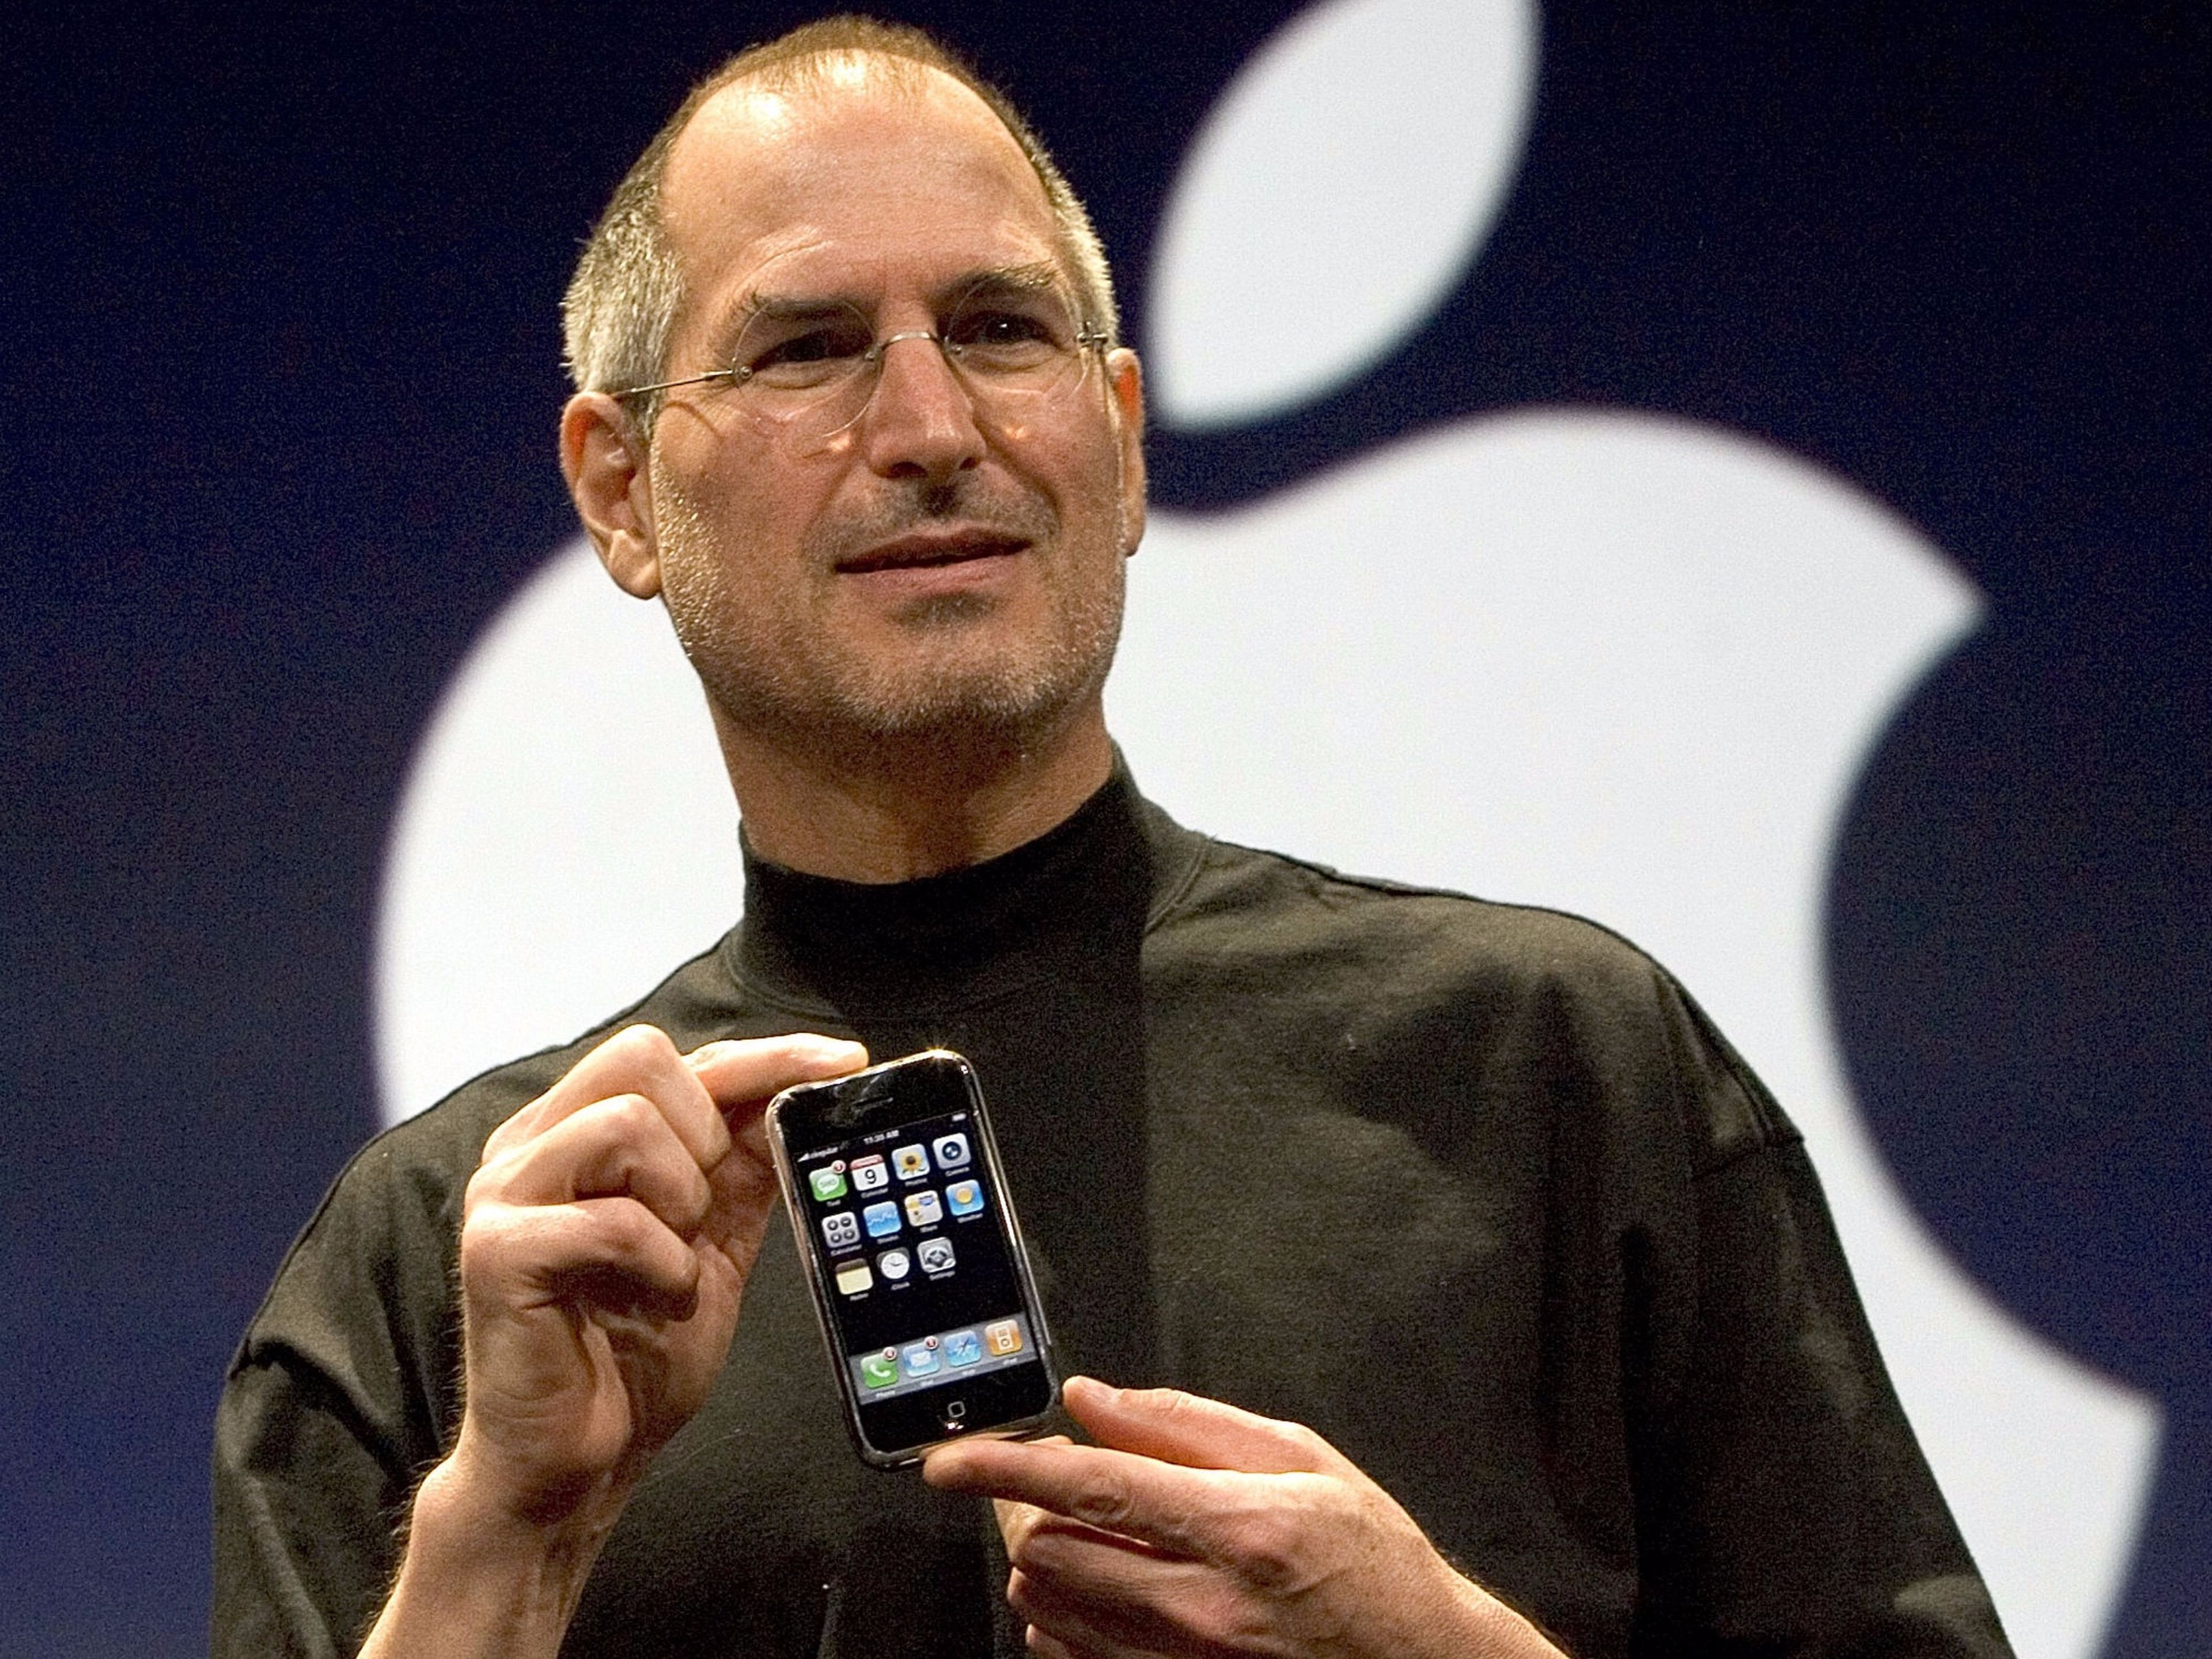 "No hay anuncios. Construimos productos que también queremos para nosotros, y simplemente no queremos anuncios", aseguraba Steve Jobs en 2011.